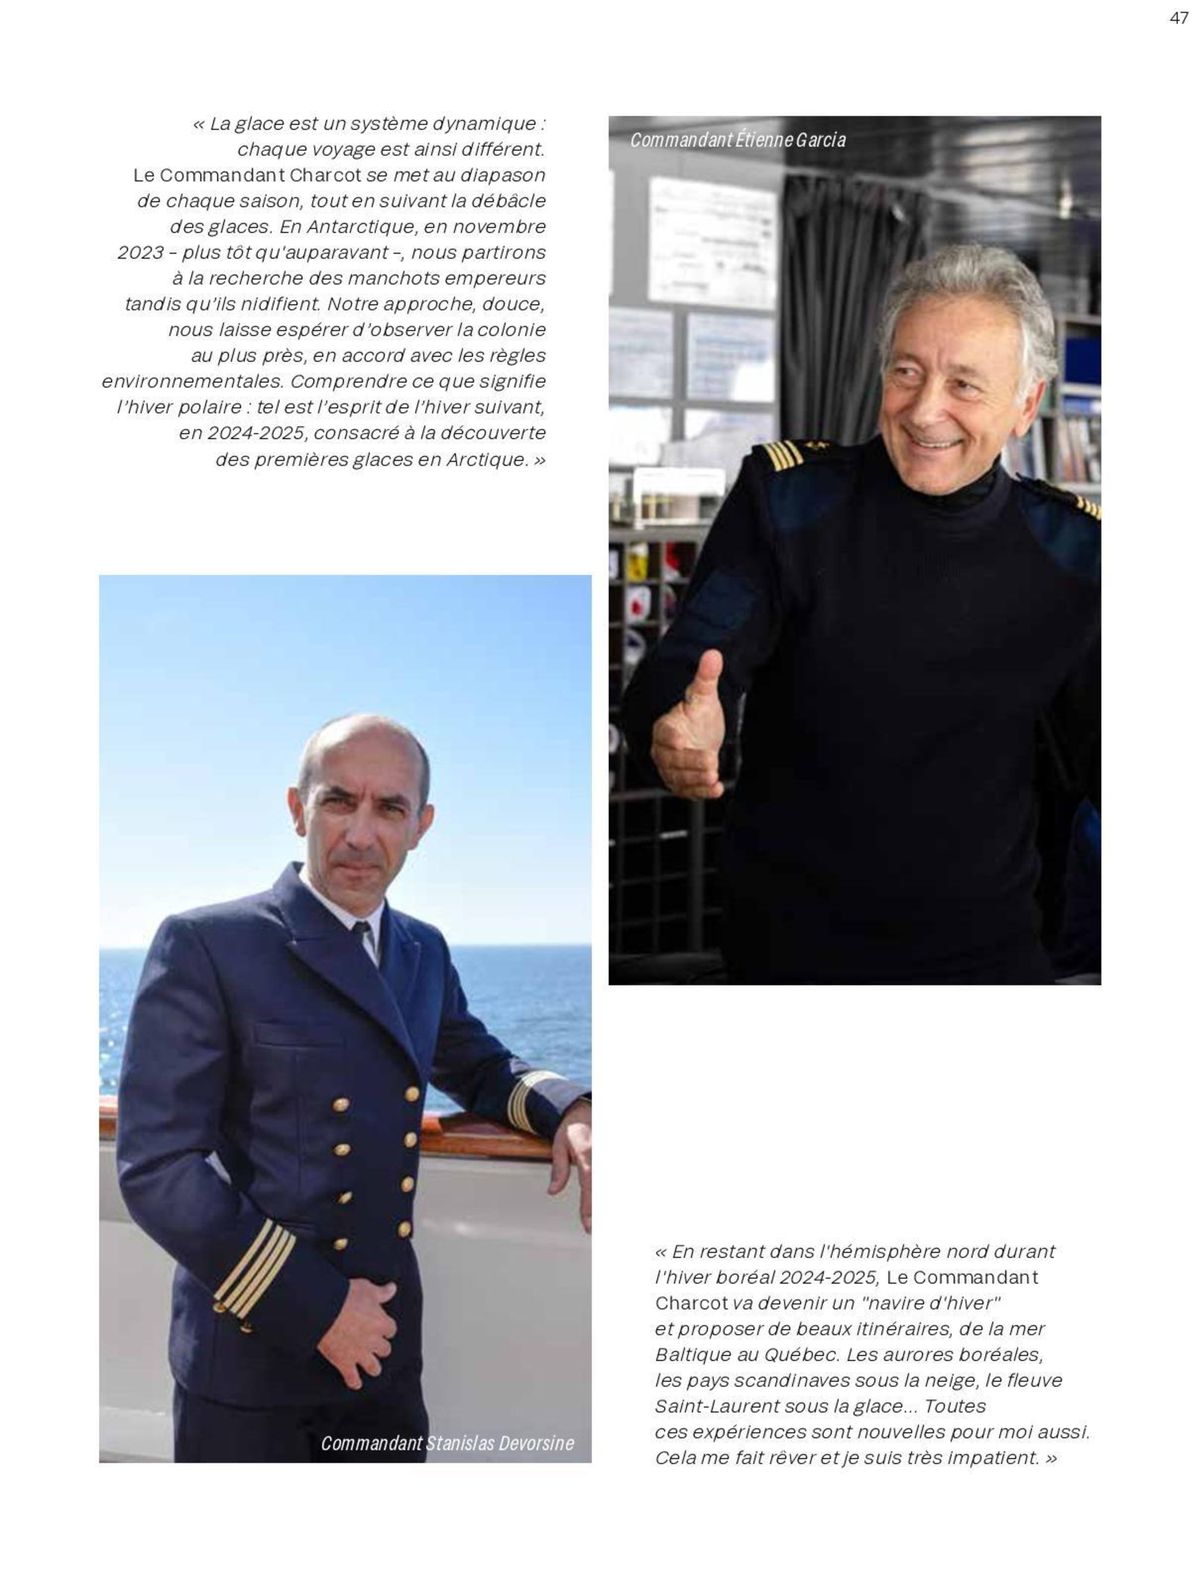 Catalogue  Le Commandant Charcot 2023-2025, page 00089